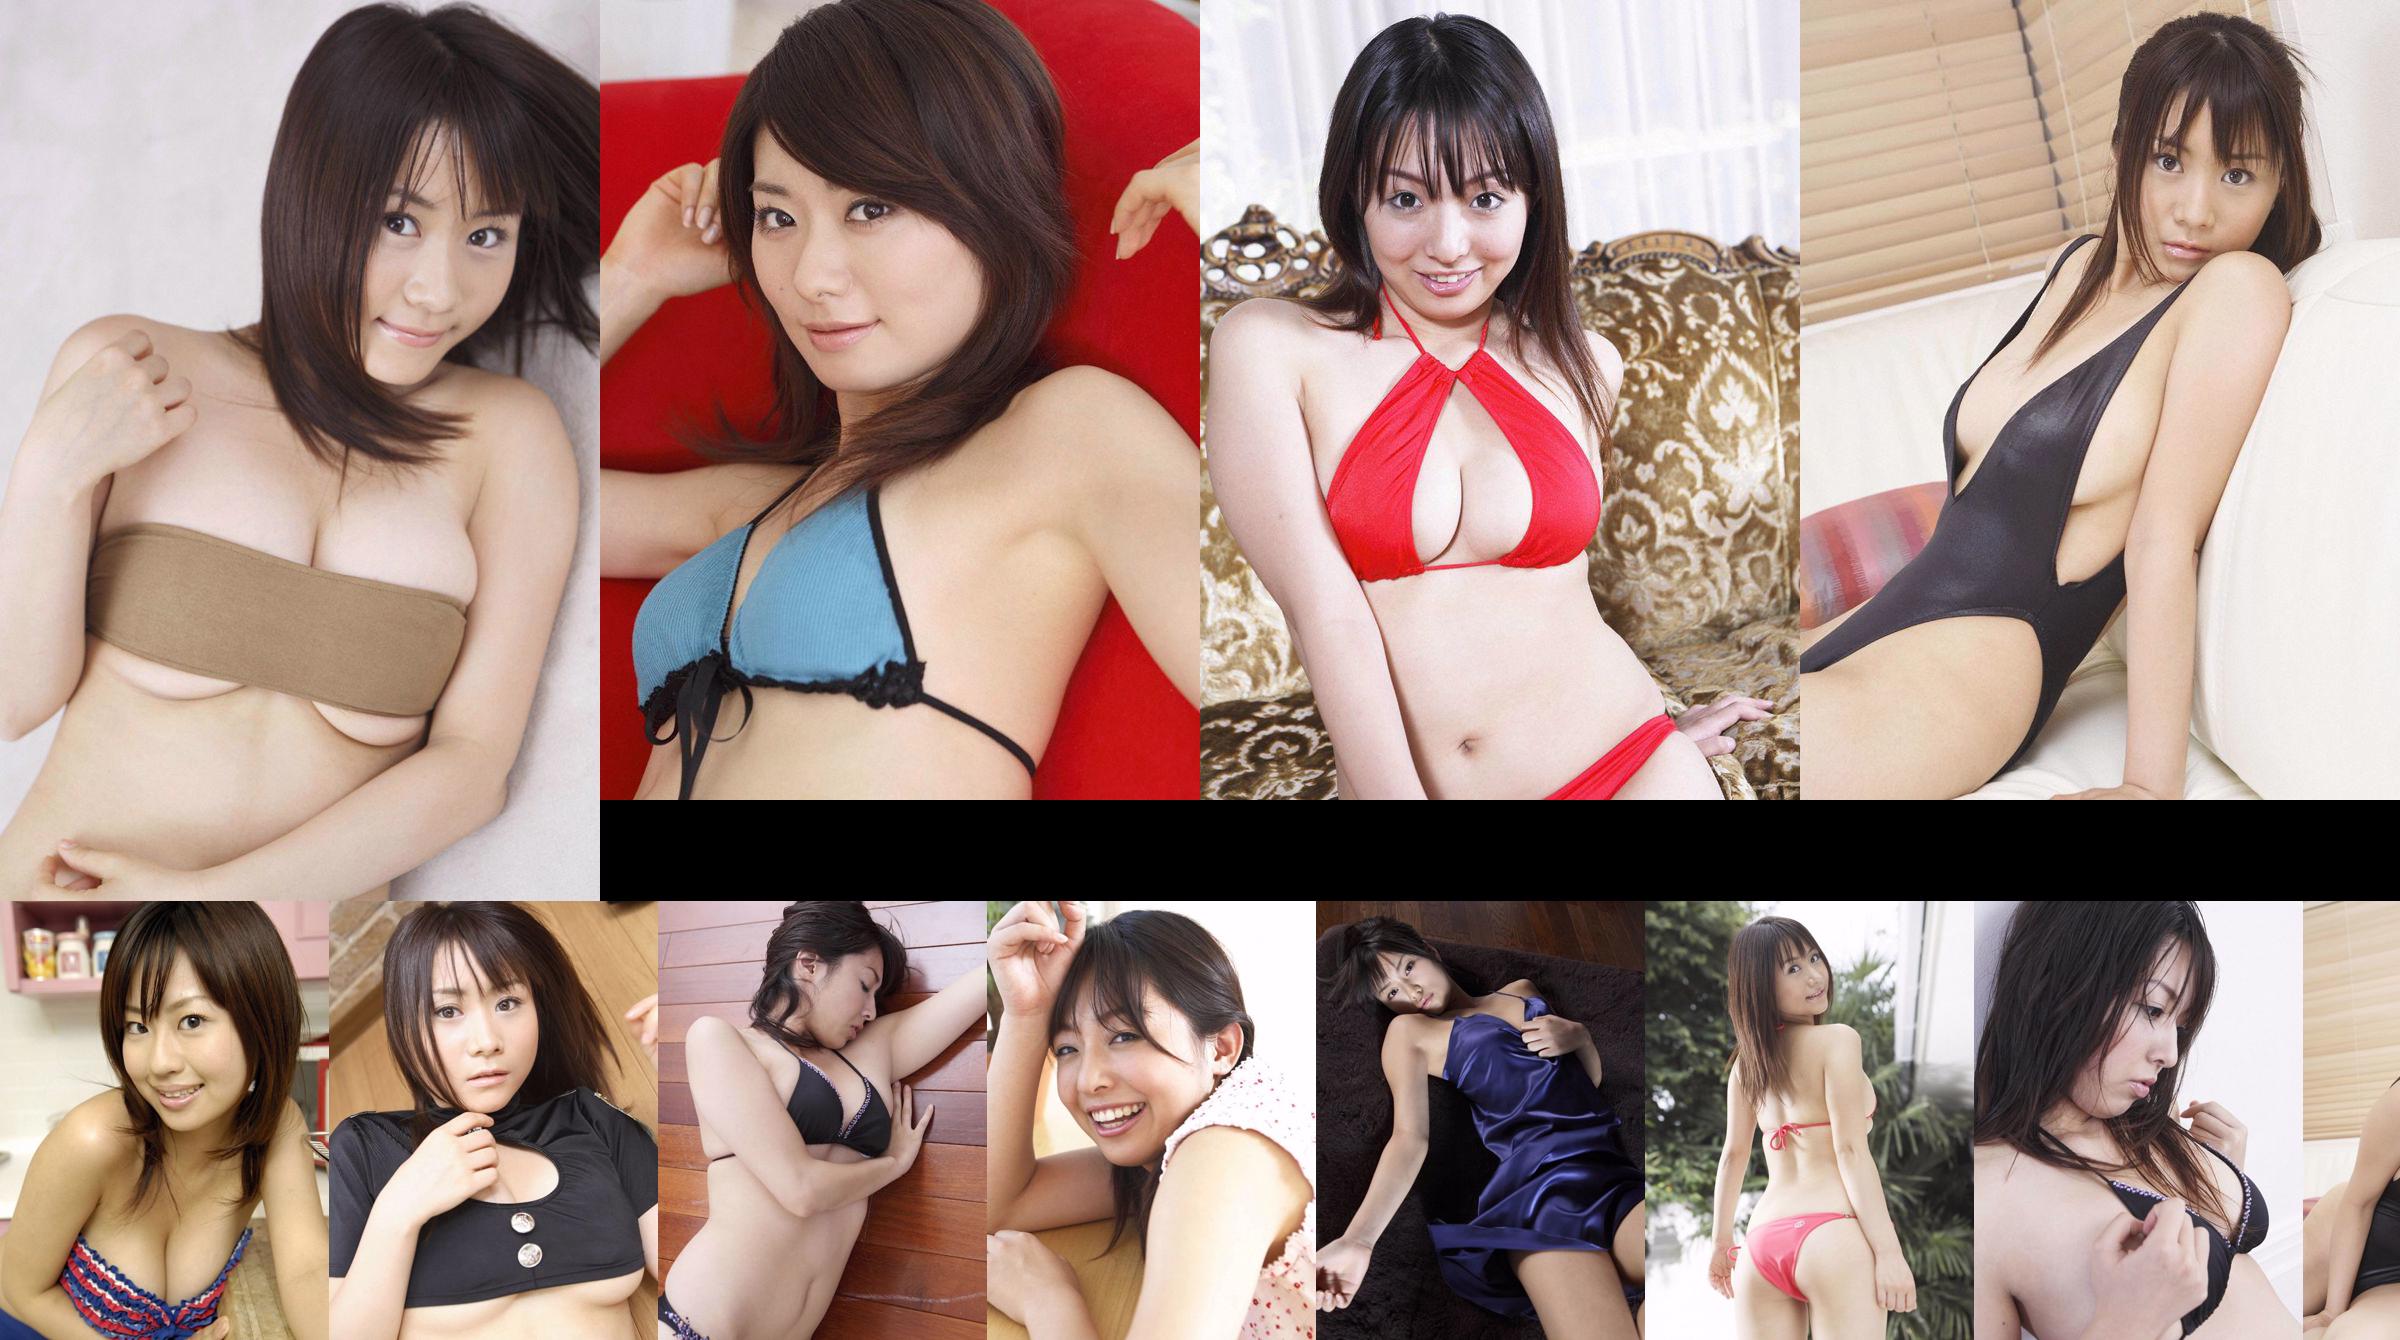 [Wanibooks] NR.37 Ai Arakawa, Hitomi Kaikawa, Hitomi Kitamura, Naomi I, Chii Matsuda fotocollectie No.616196 Pagina 4